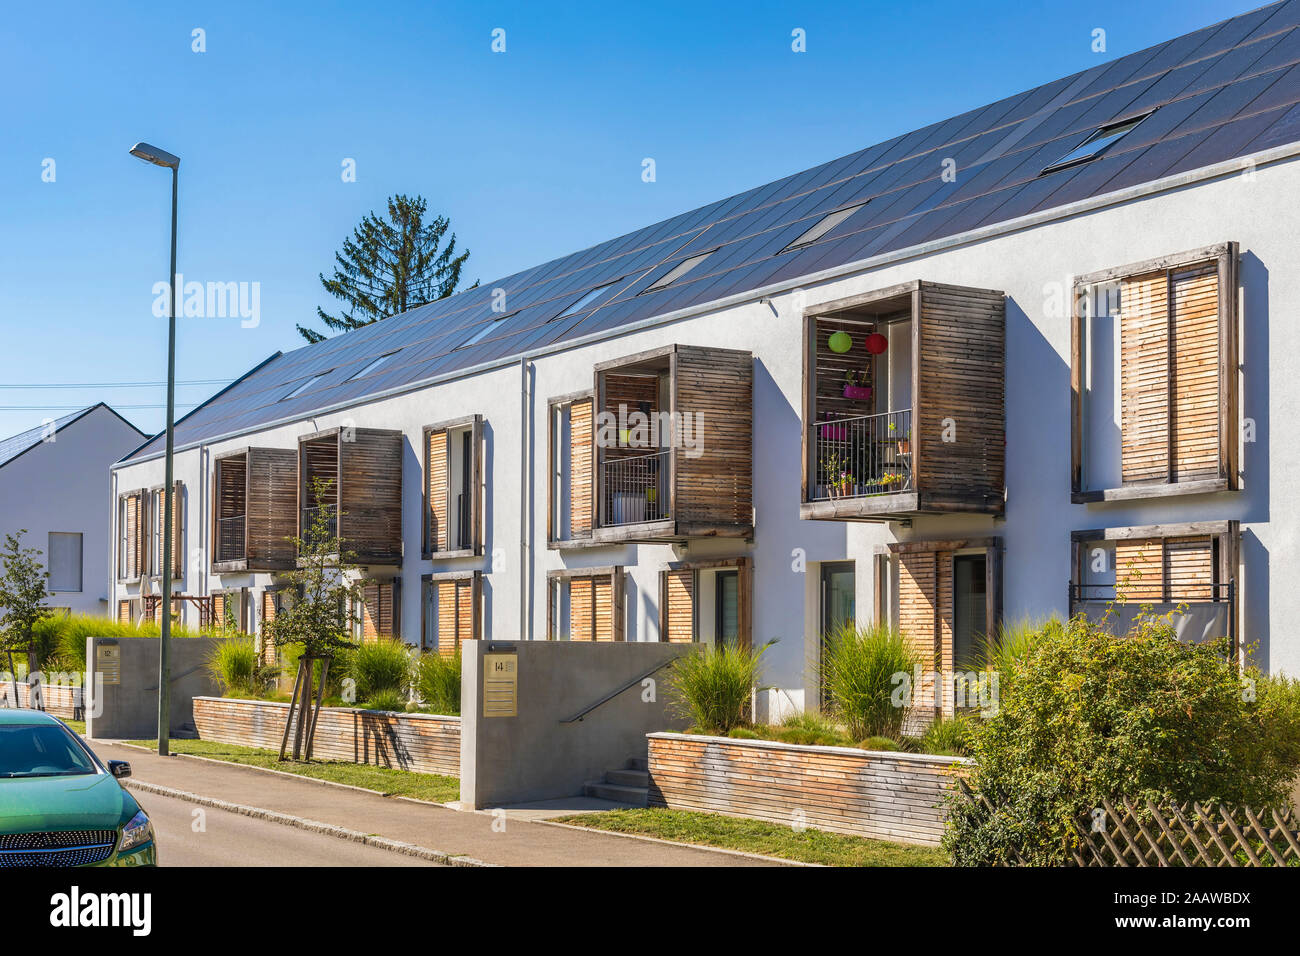 Germany, Bavaria, Neu Ulm, energy efficient house Stock Photo